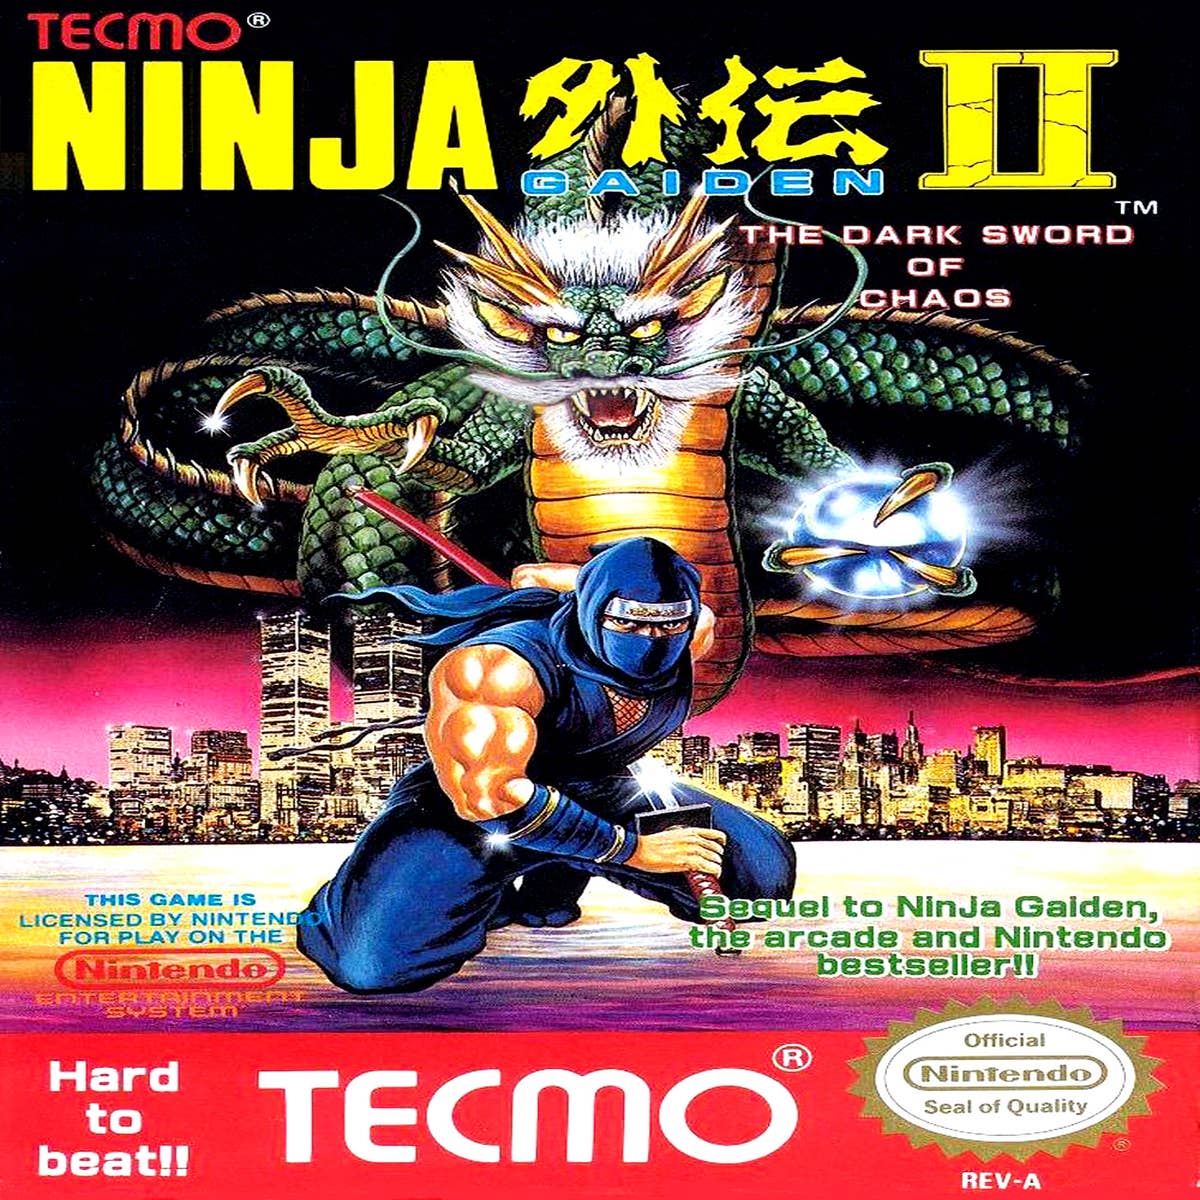 Ninja (Character) - Giant Bomb